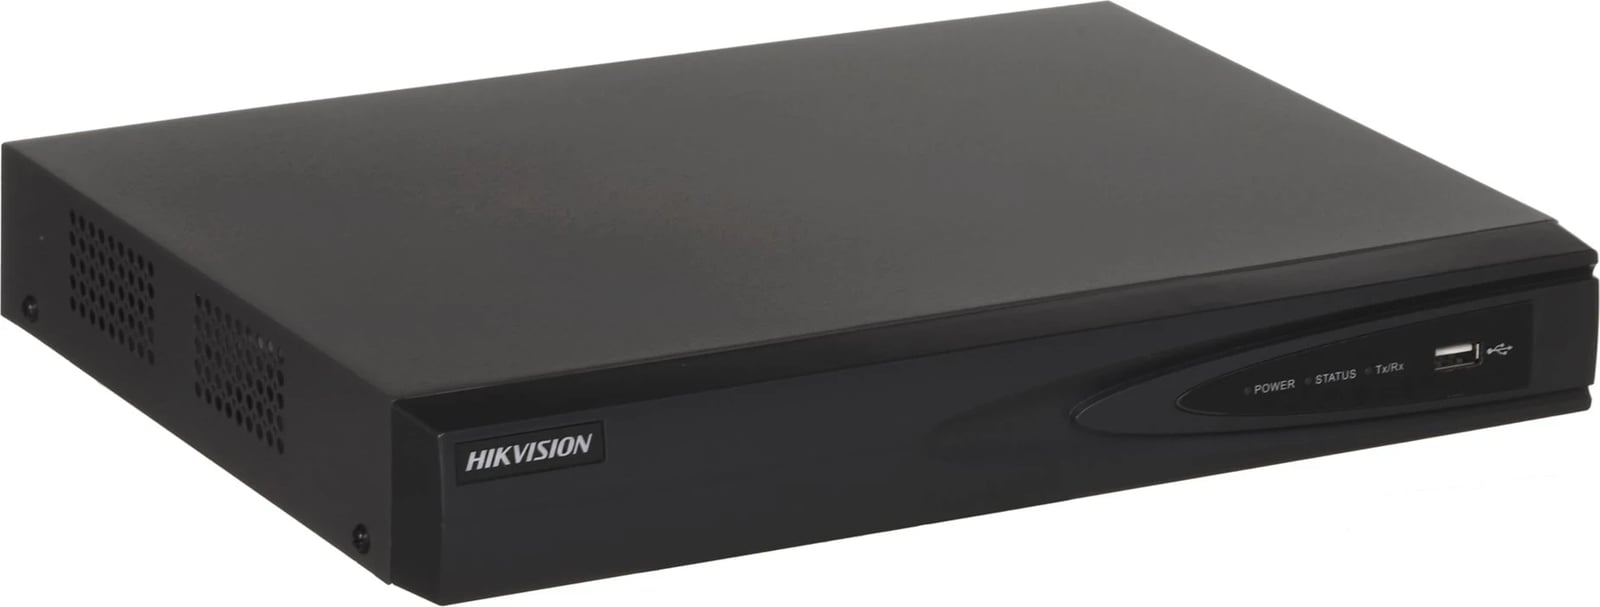 Regjistrues Video Rrjeti Hikvision DS-7604NI-K1, 1U, i Zi